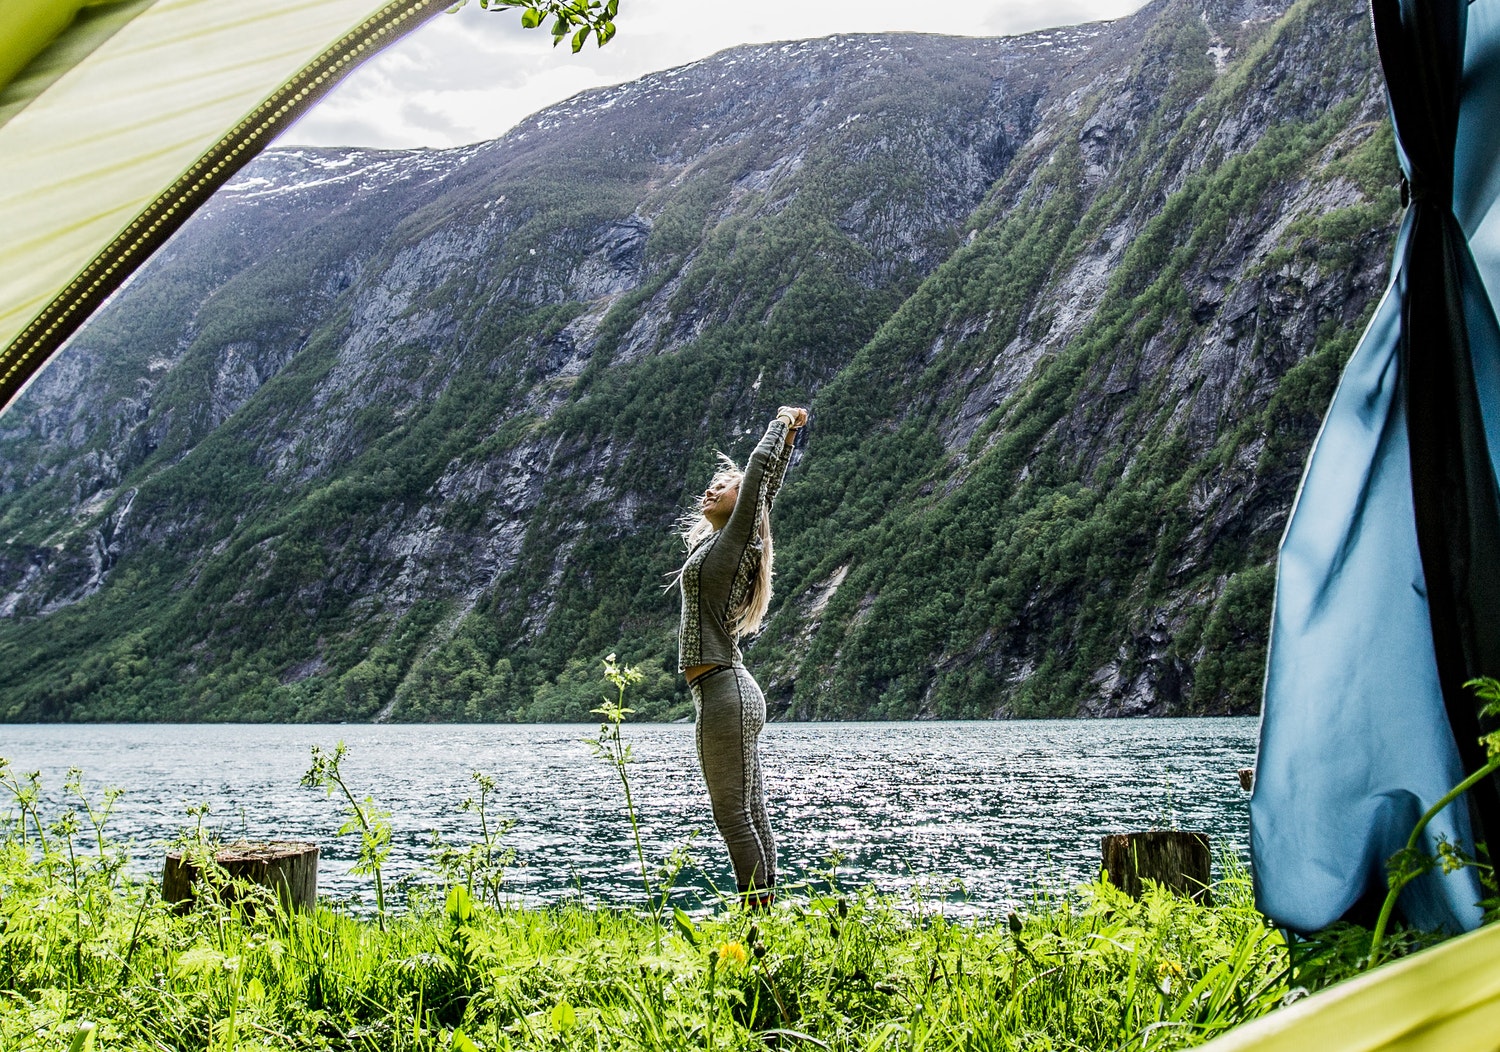 Campeggio libero in Italia: dove e come dormire in tenda nella natura